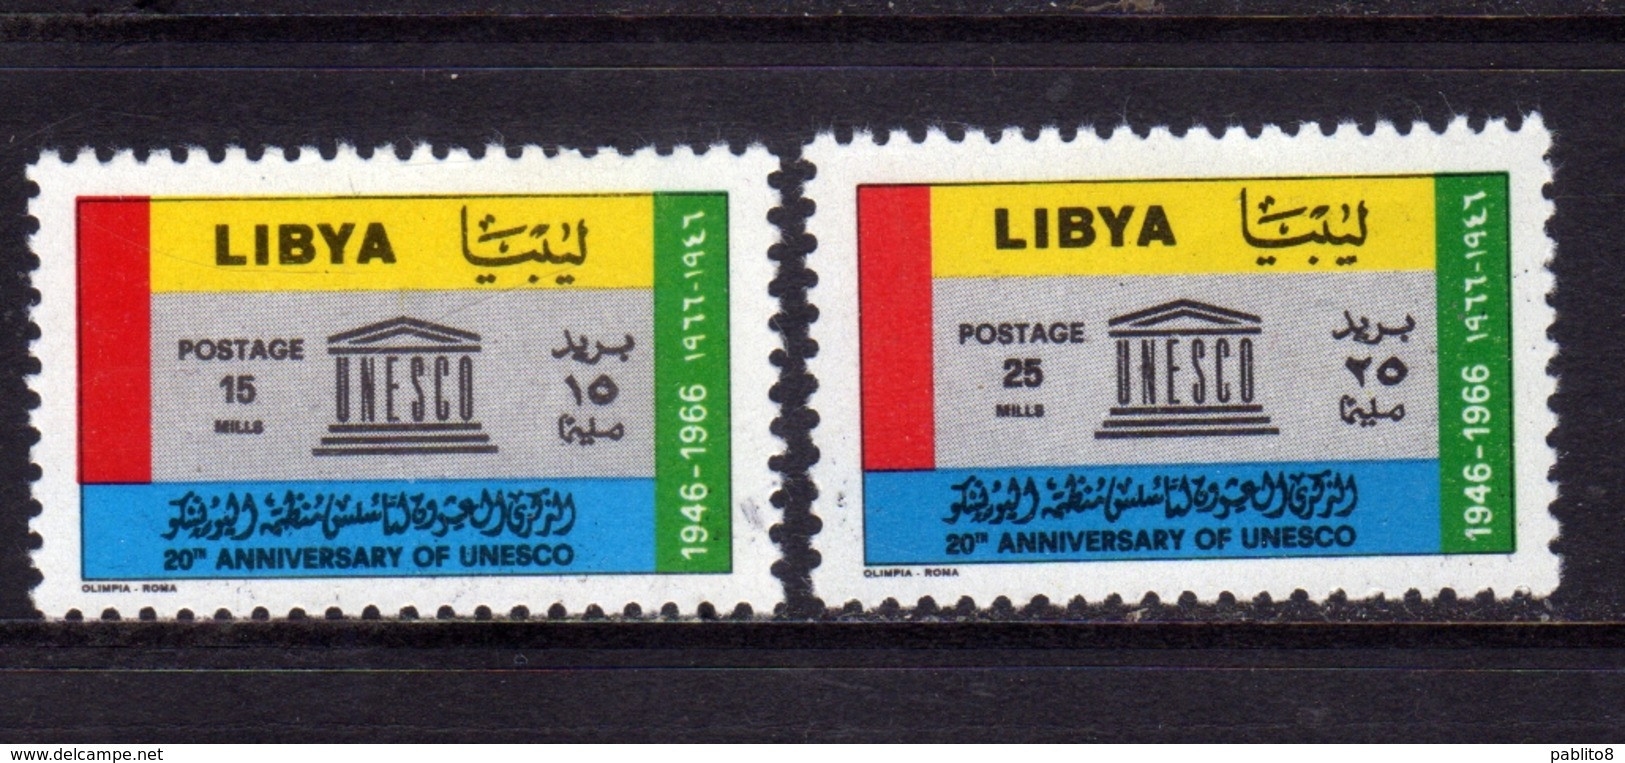 LIBYA LIBIA UNITED KINGDOM REGNO UNITO 1966 UNESCO SERIE COMPLETA COMPLETE SET MNH - Libye